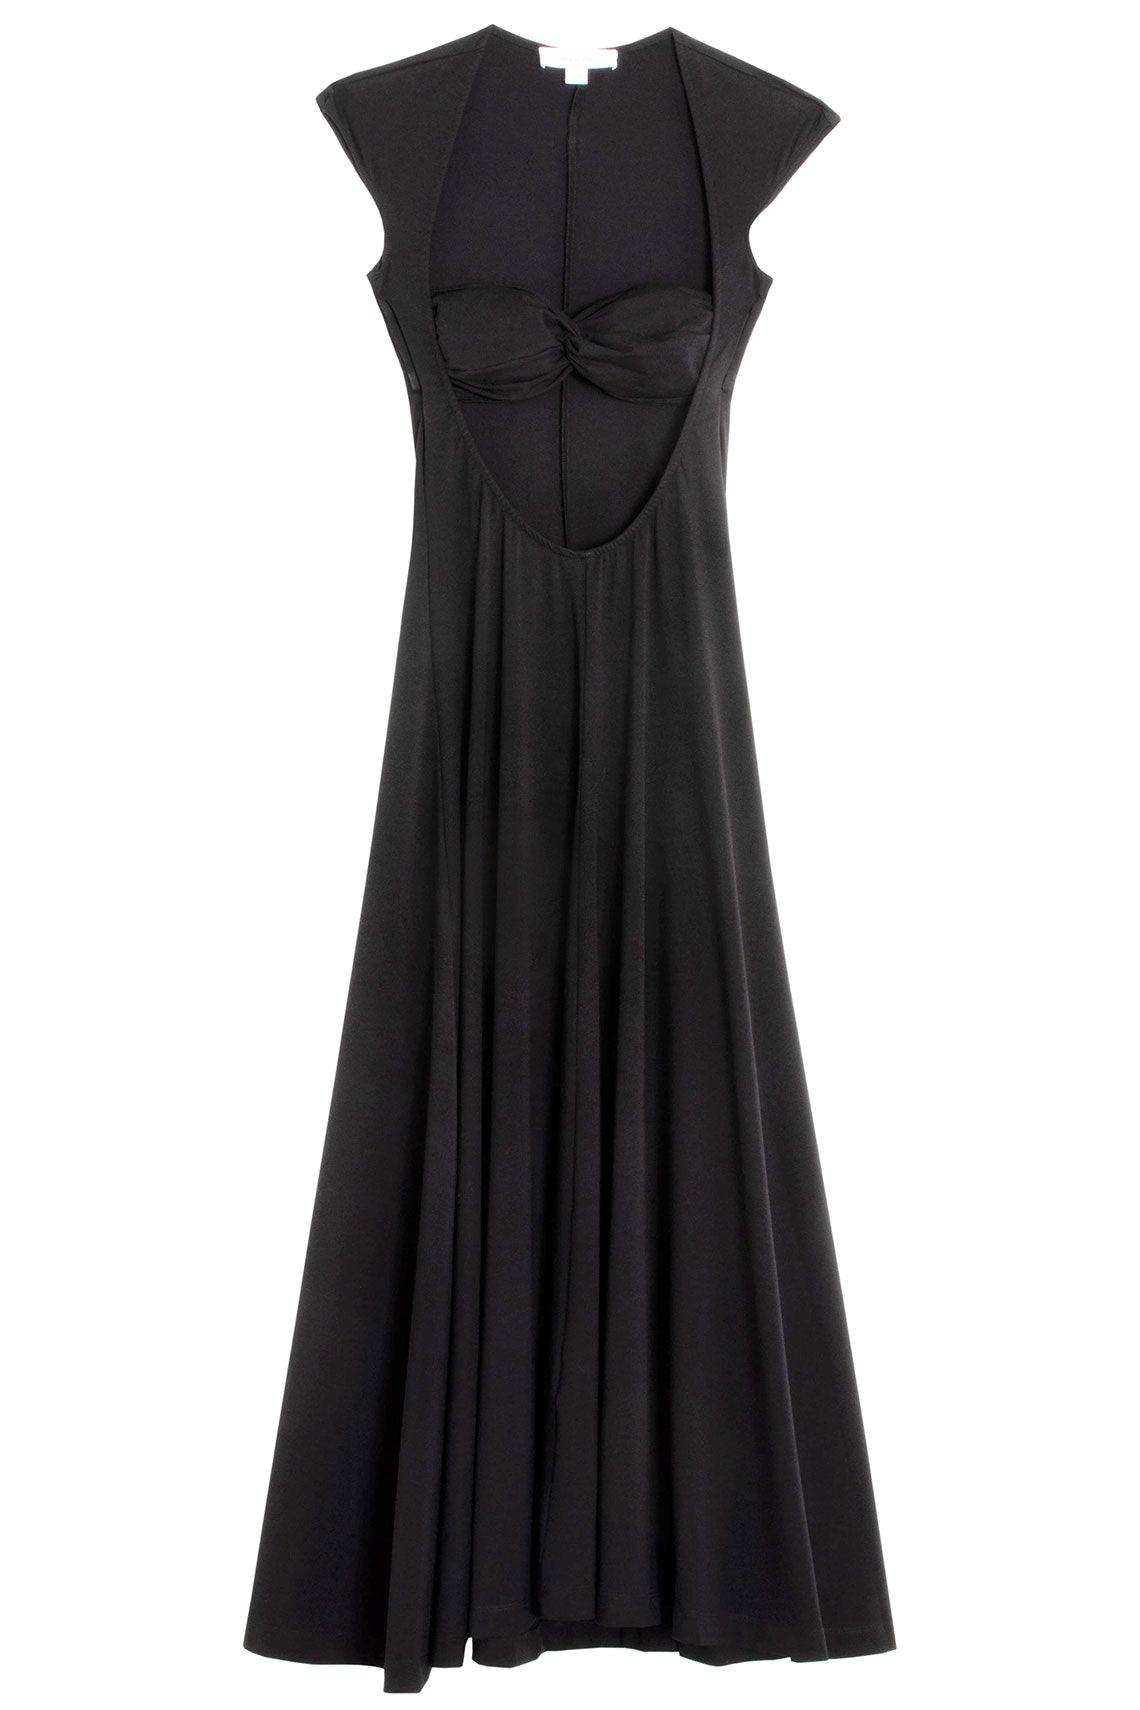 SALE 30% OFF - Beaufille - Black Baes Dress – BONA DRAG